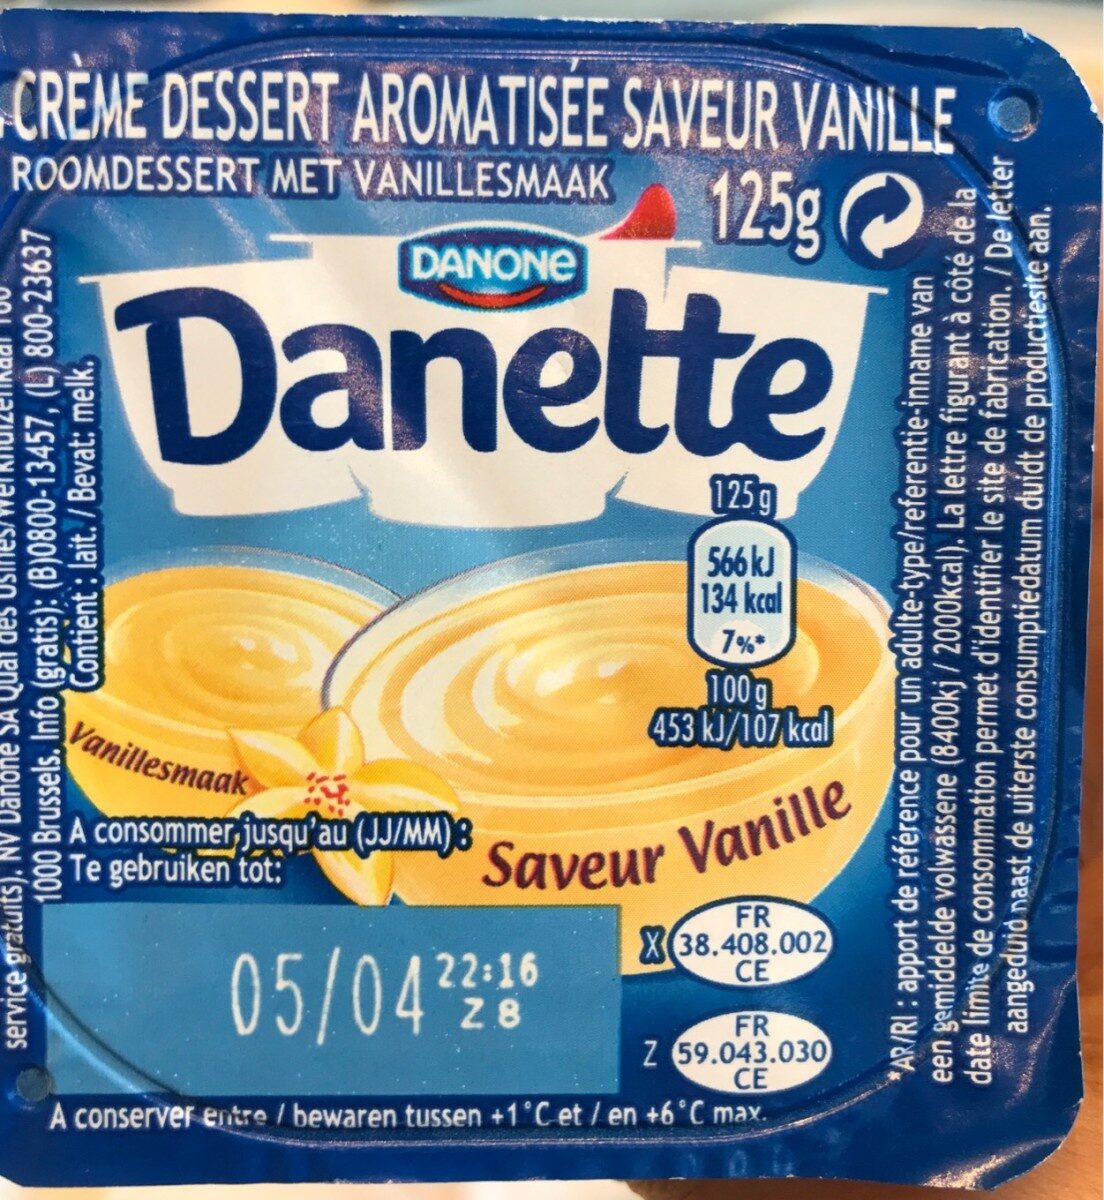 Danette saveur vanille - Product - fr